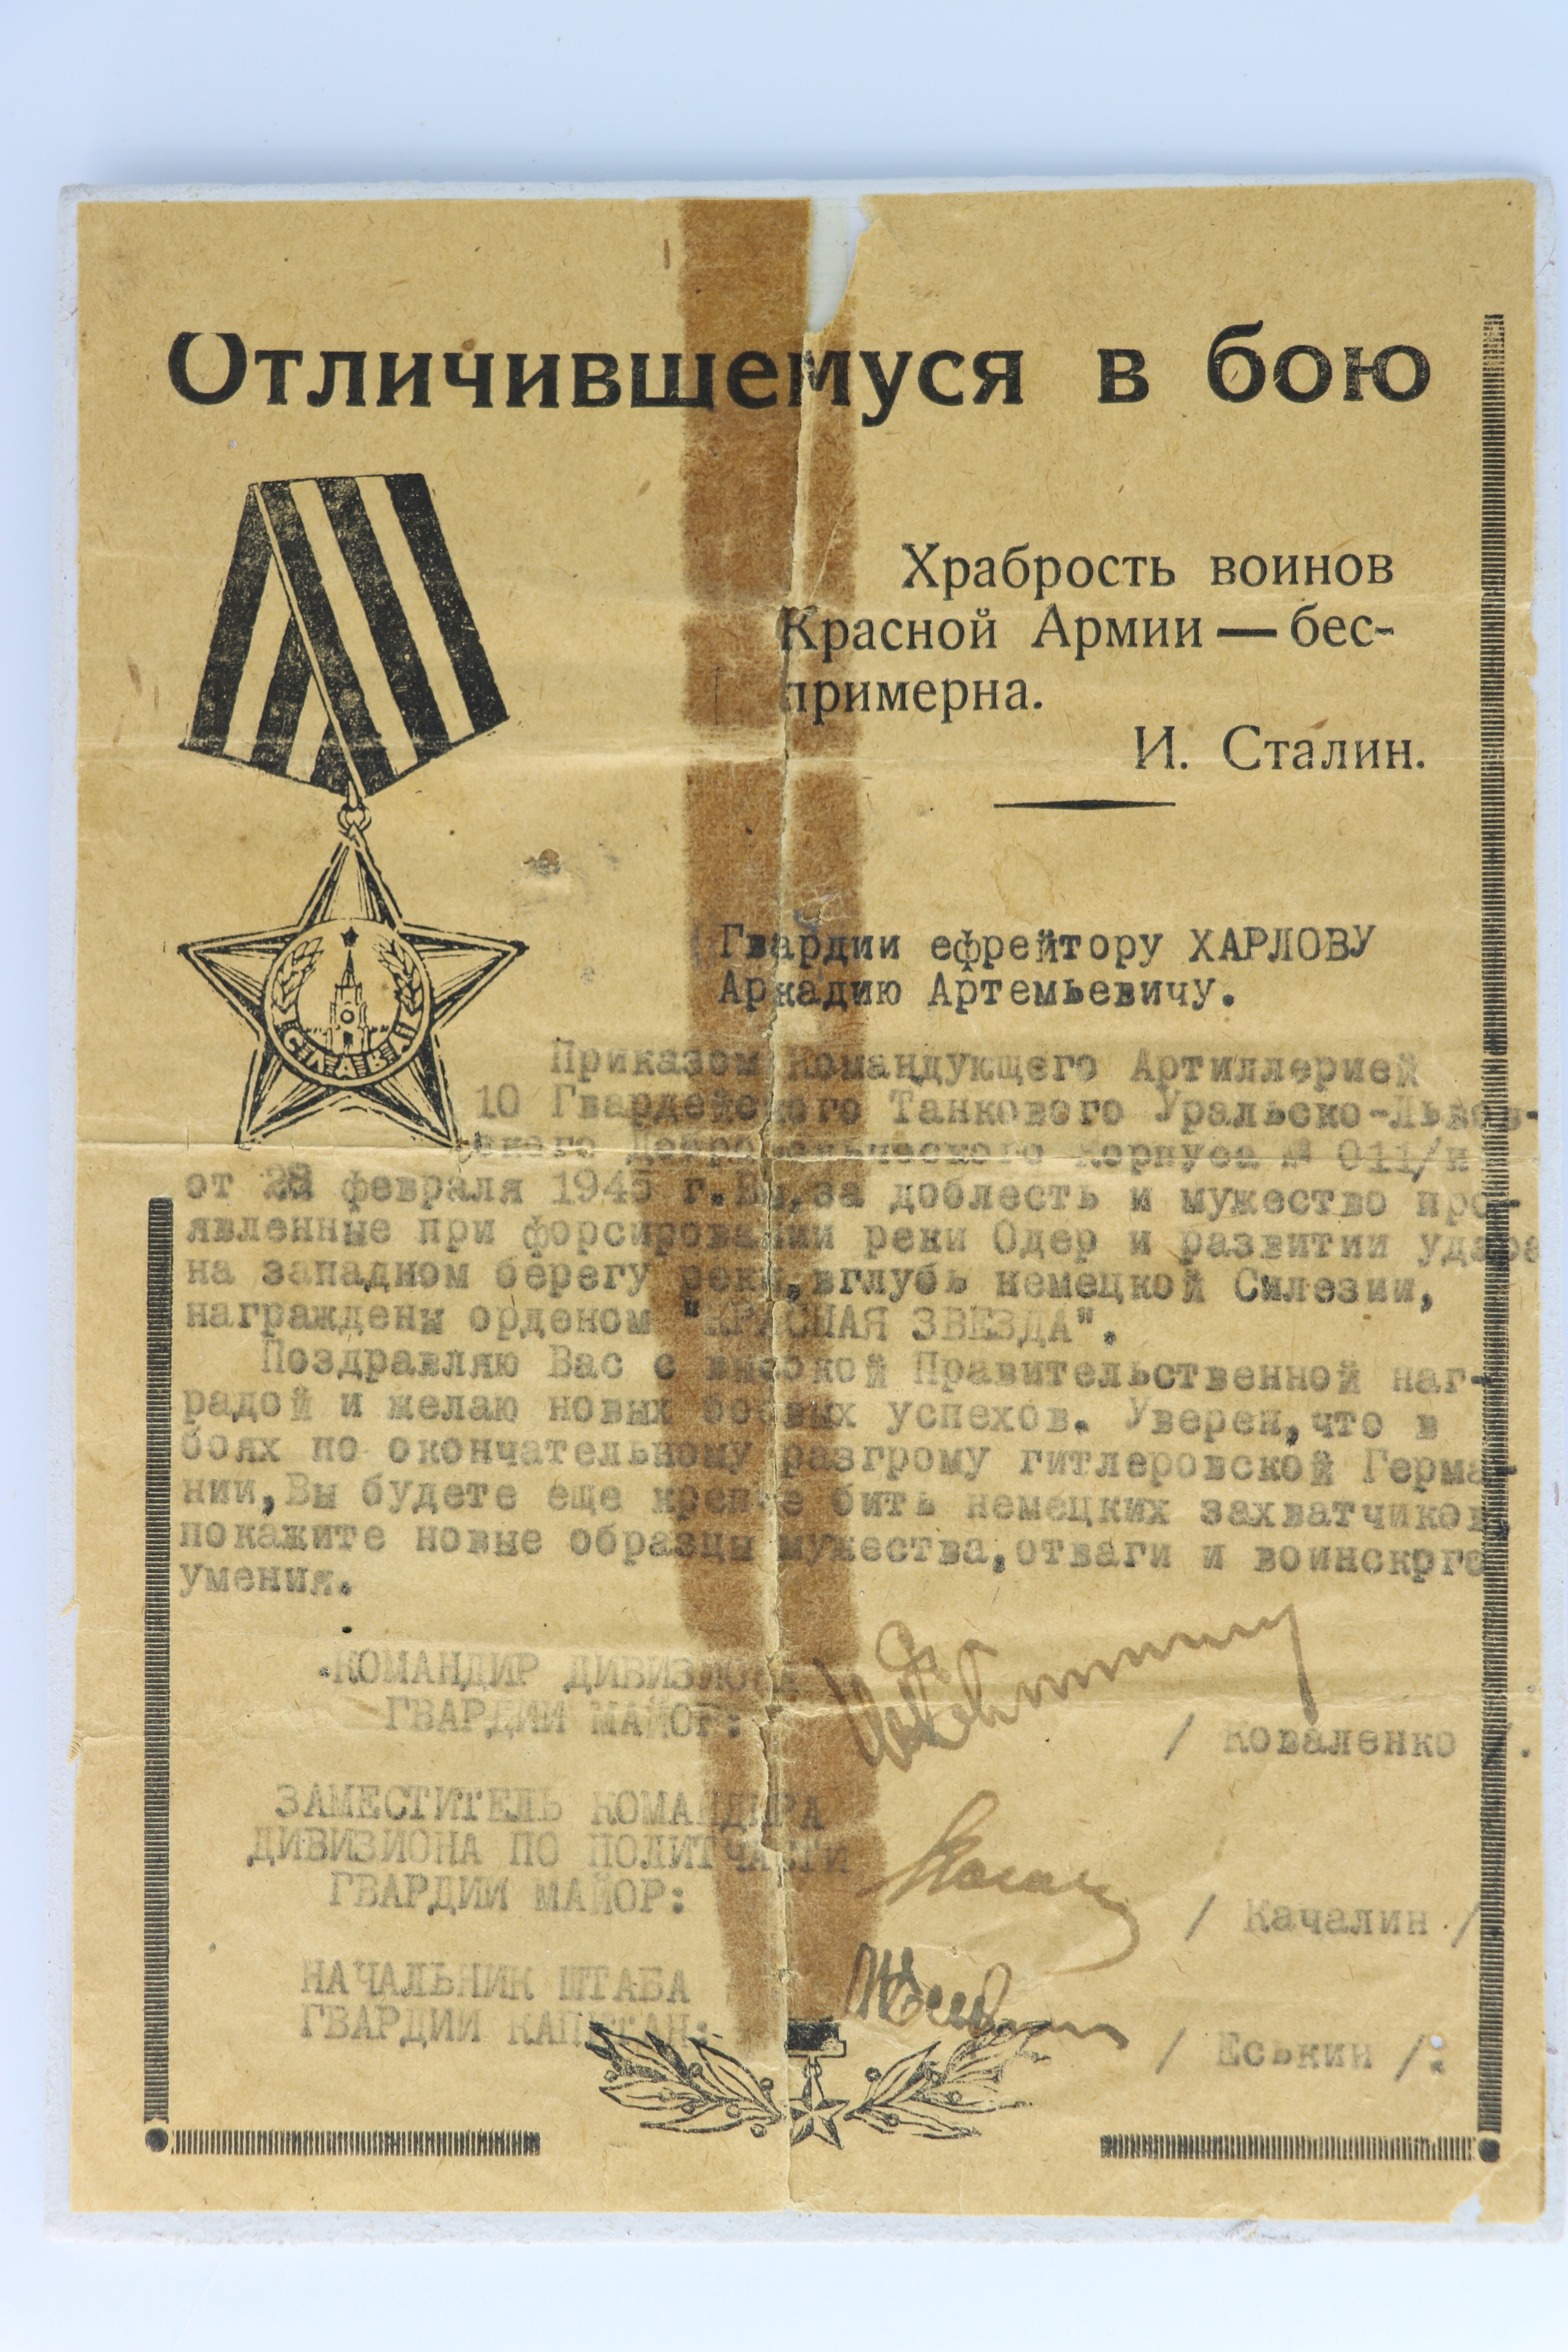 Besitzzeugnis mit Begründung über Verleihung des Ordens des Roten Sterns an den Gardegefreiten Charlov, Arkadij Artem'evič (Museum Berlin-Karlshorst CC BY-NC-SA)